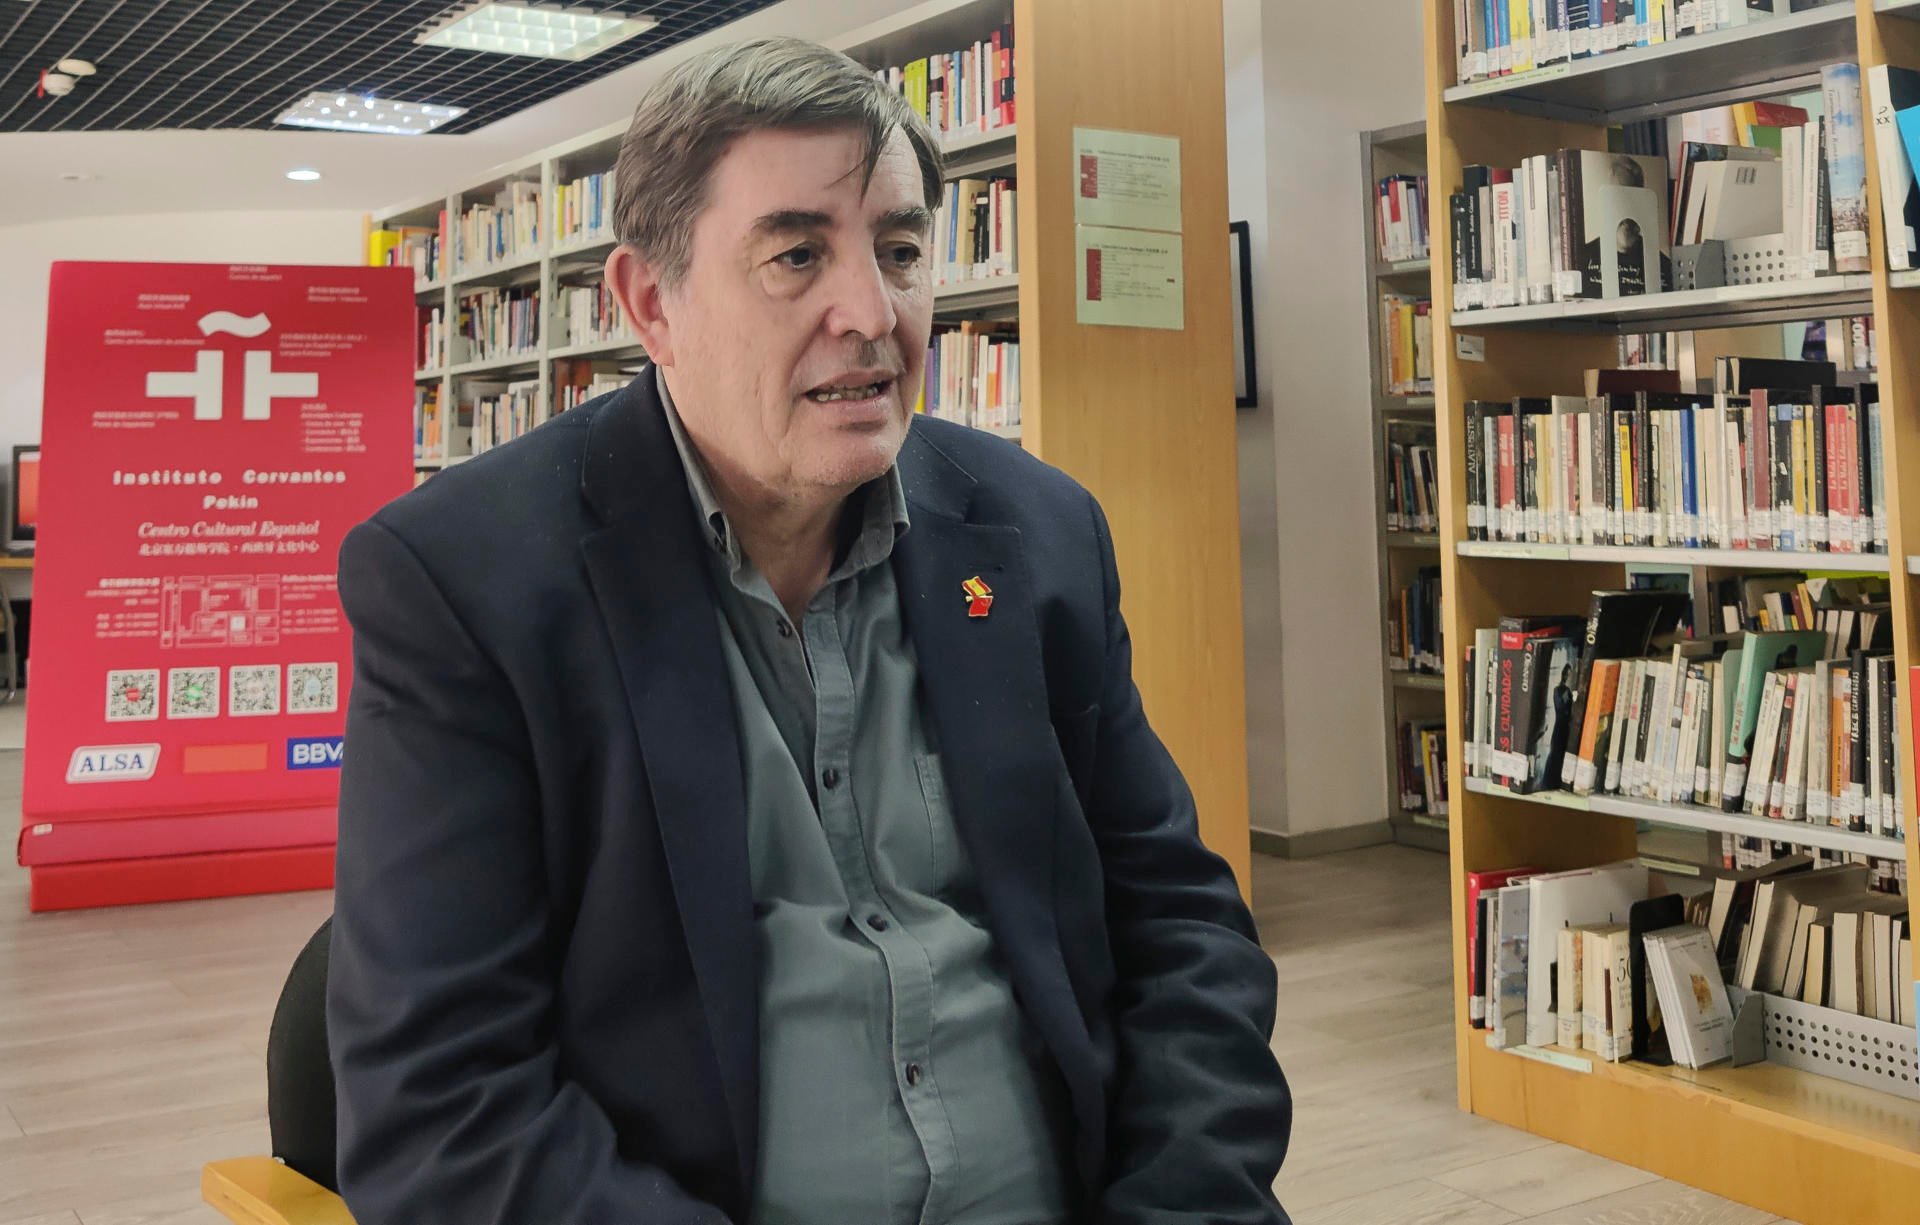 El español permanece unido porque ha respetado la diversidad: García Montero